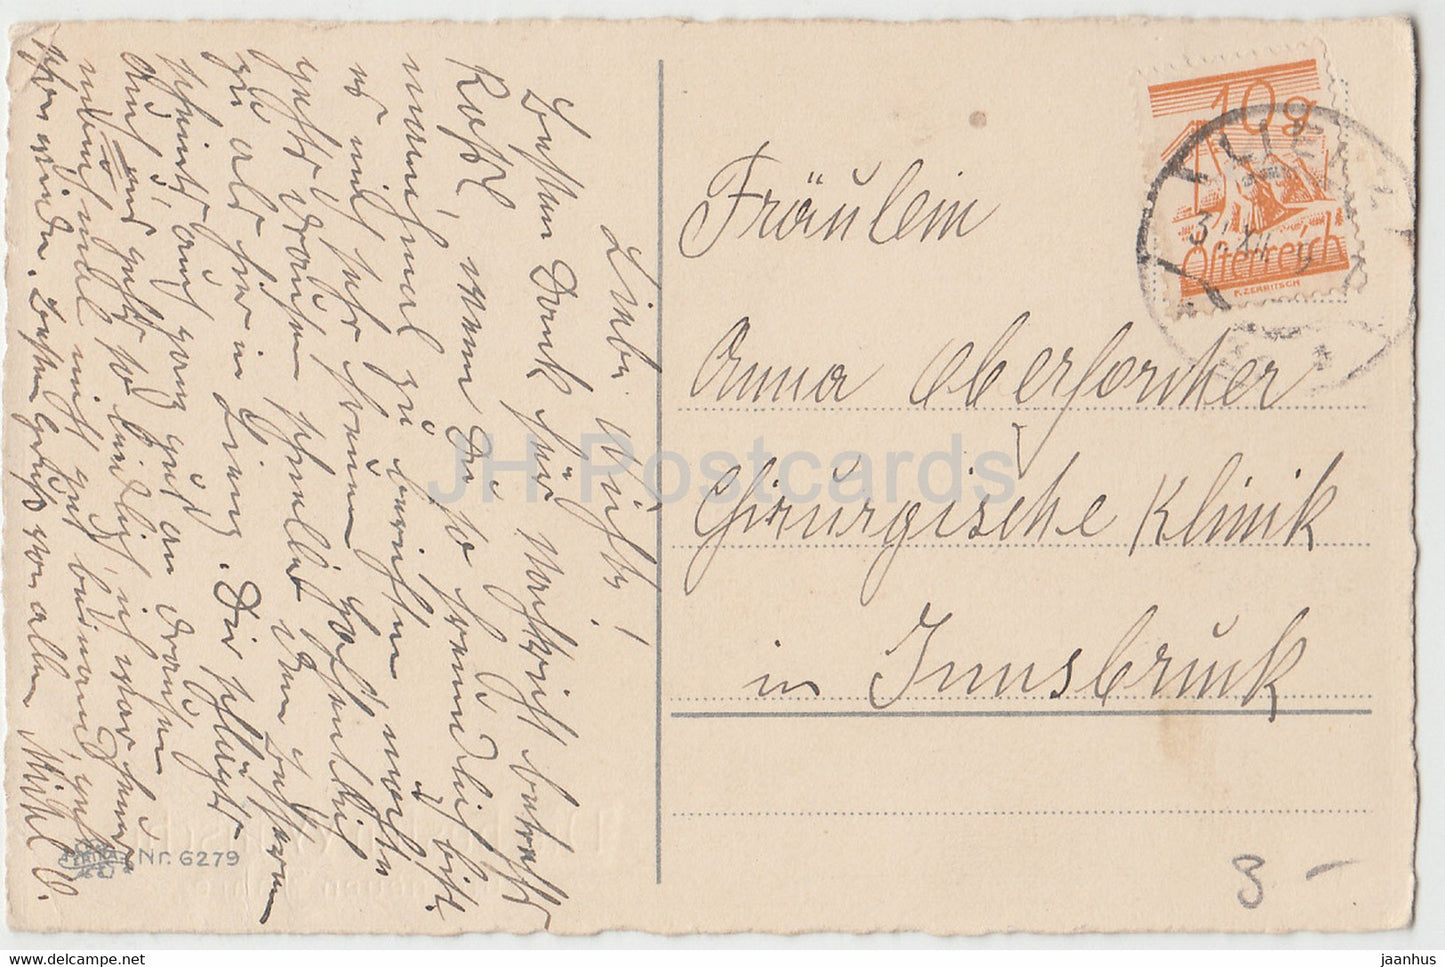 New Year Greeting Card - Die Besten Wunsche zum neuen Jahre - ERIKA 6279 - old postcard - 1934 - Germany - used